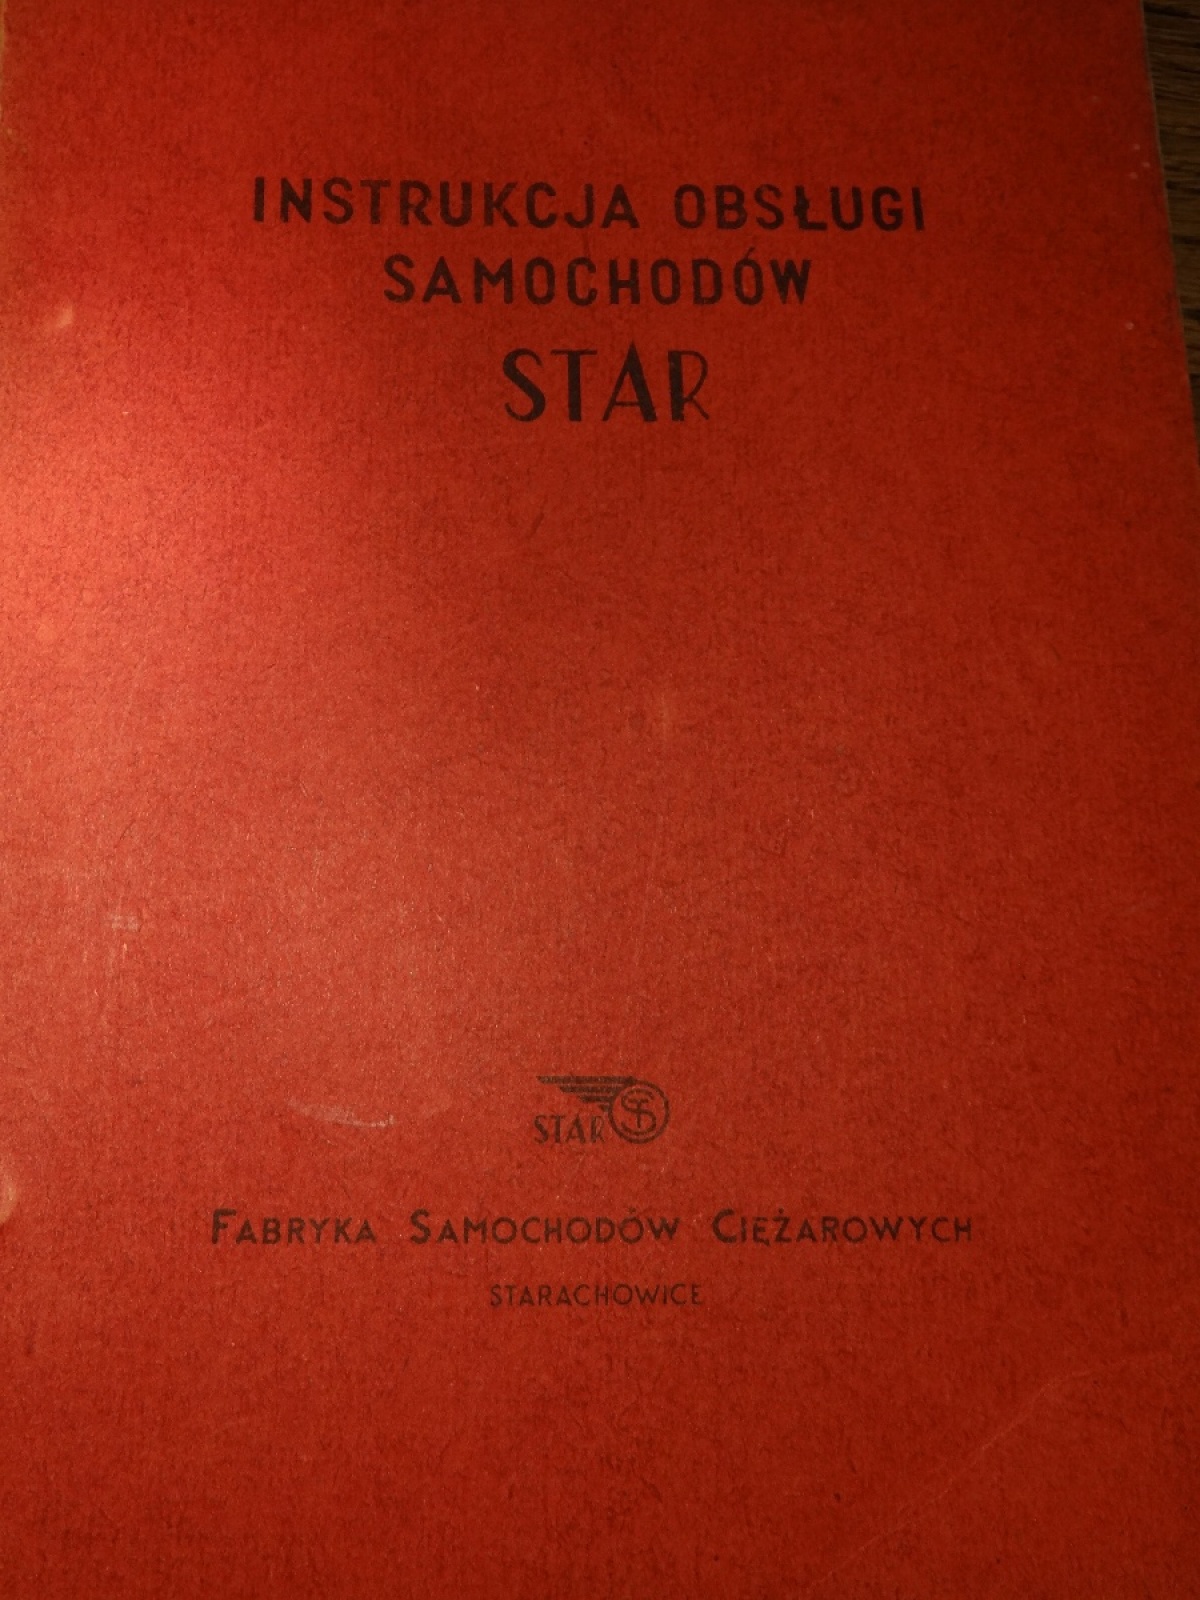 STAR 25 INSTRUKCJA OBSŁUGI 1959 STARACHOWICE FSC